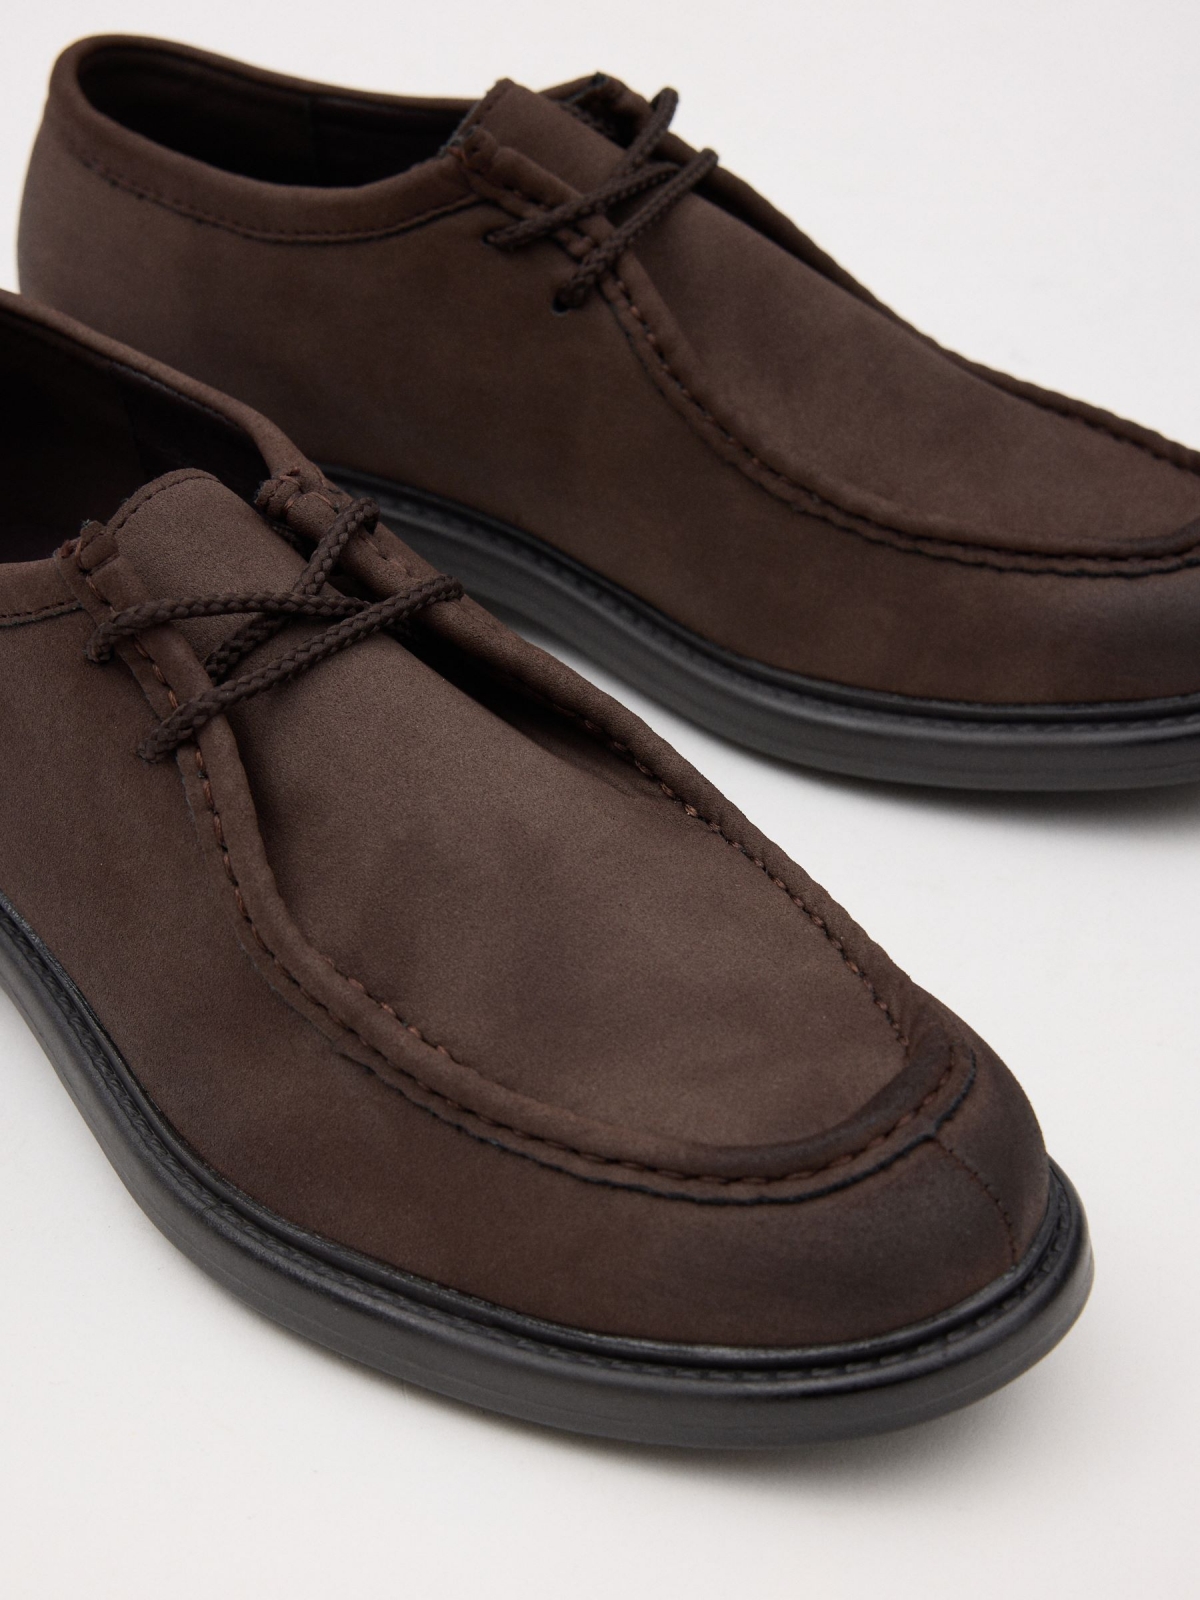 Zapato clásico de bordón marrón oscuro vista detalle